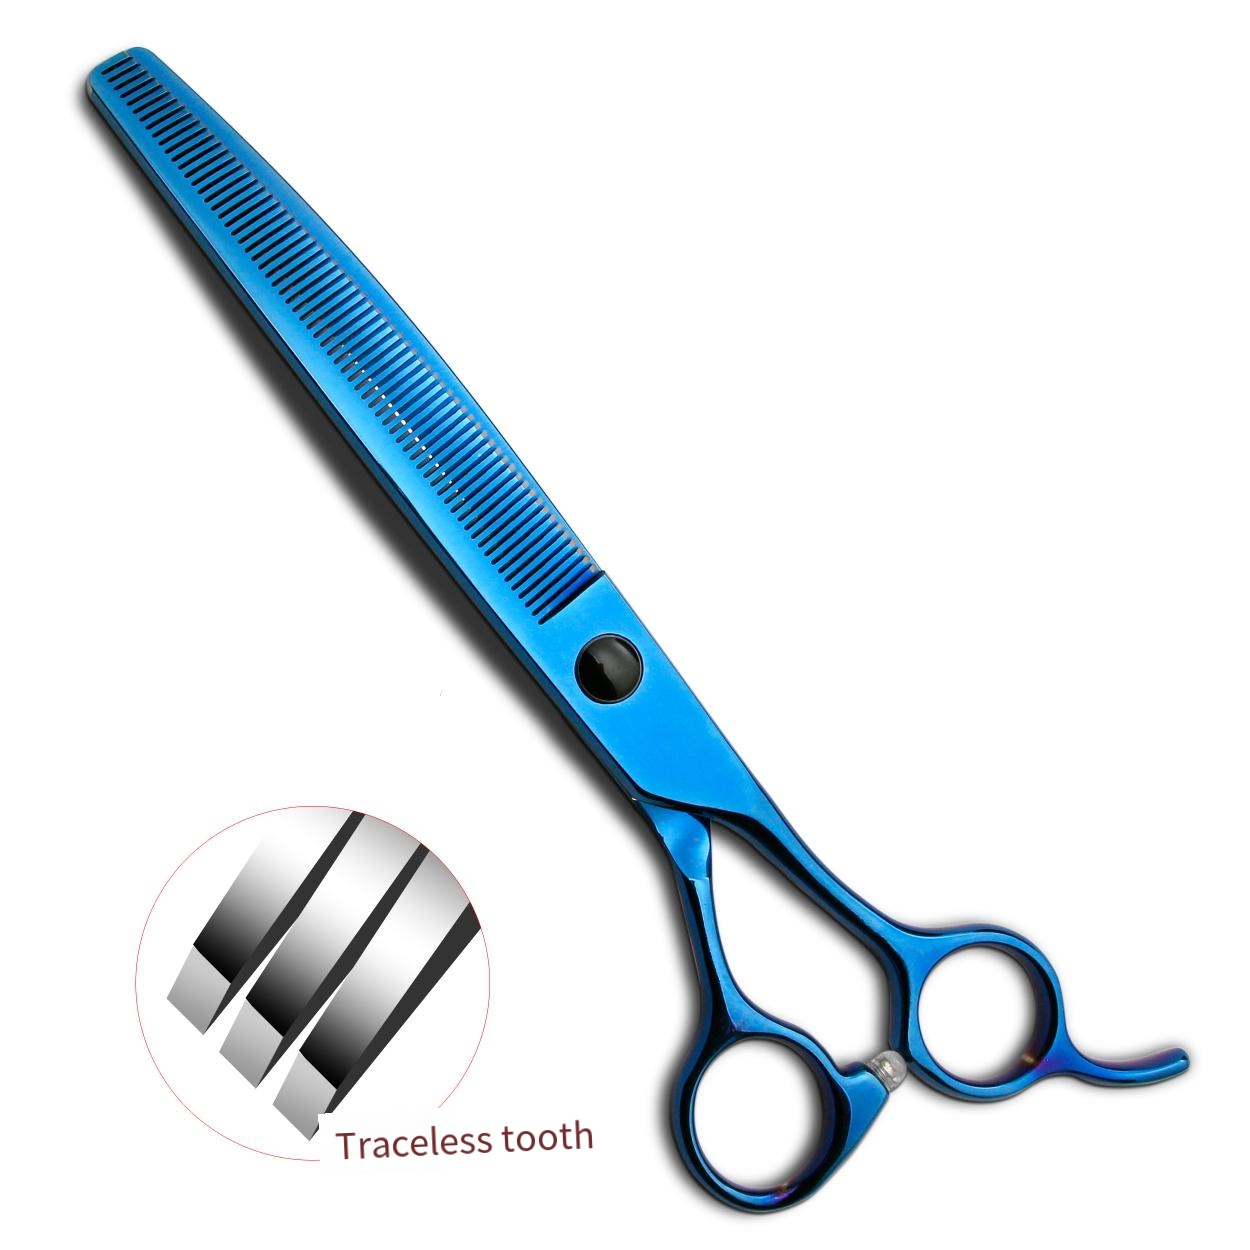 440C Hi-Q 7.5 inch pet grooming curved thinner scissors